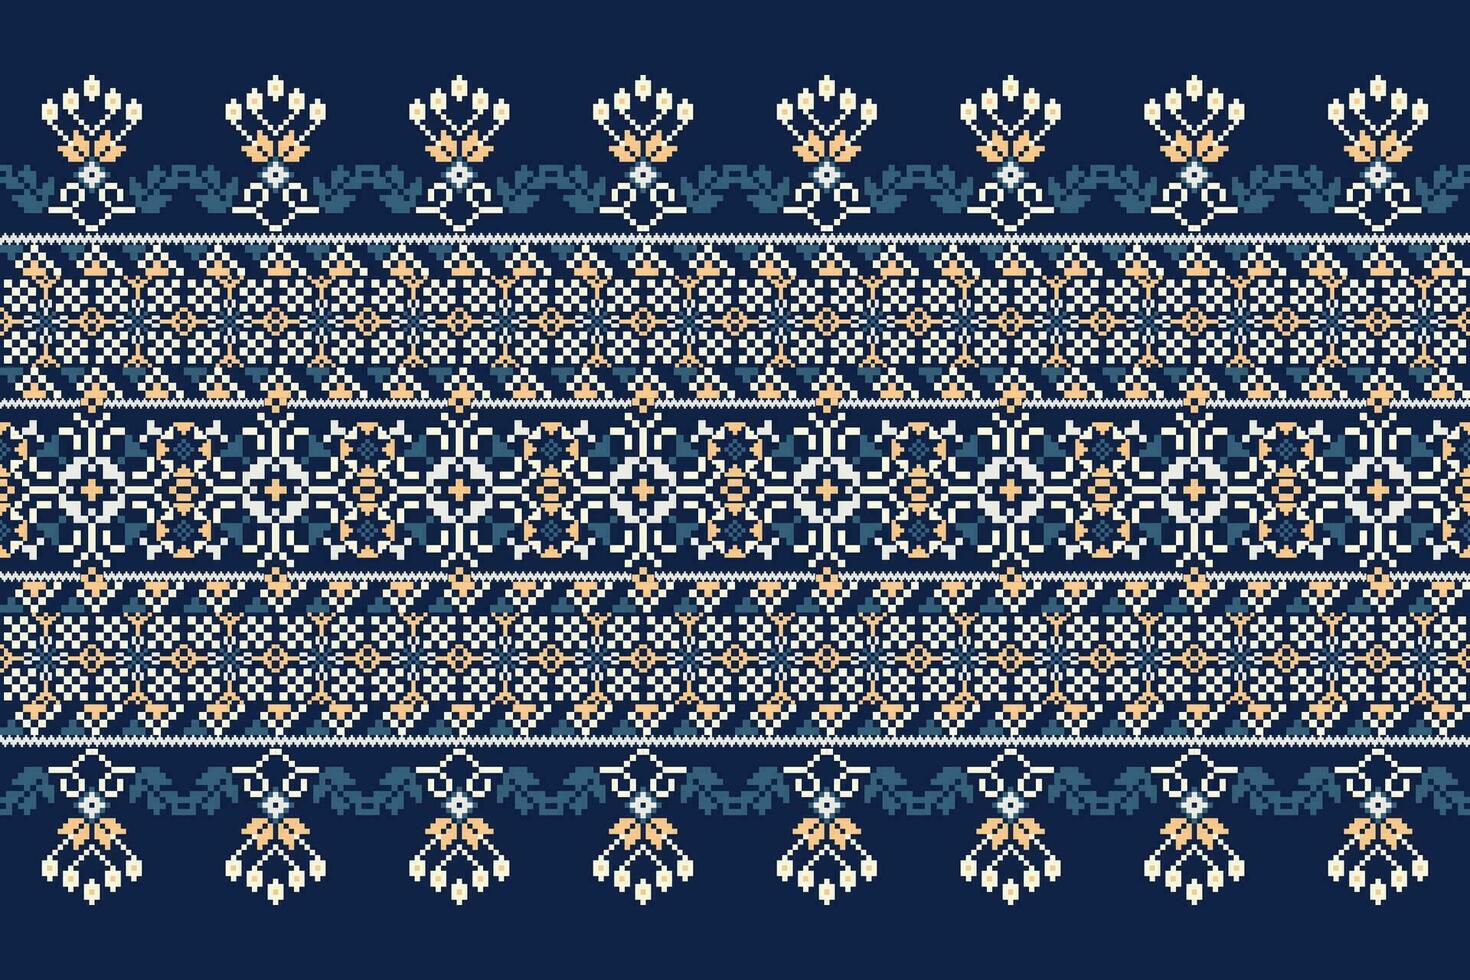 floreale attraversare punto ricamo su Marina Militare blu sfondo.geometrico etnico orientale modello tradizionale.azteco stile astratto vettore illustrazione.disegno per trama, tessuto, abbigliamento, avvolgimento, decorazione.